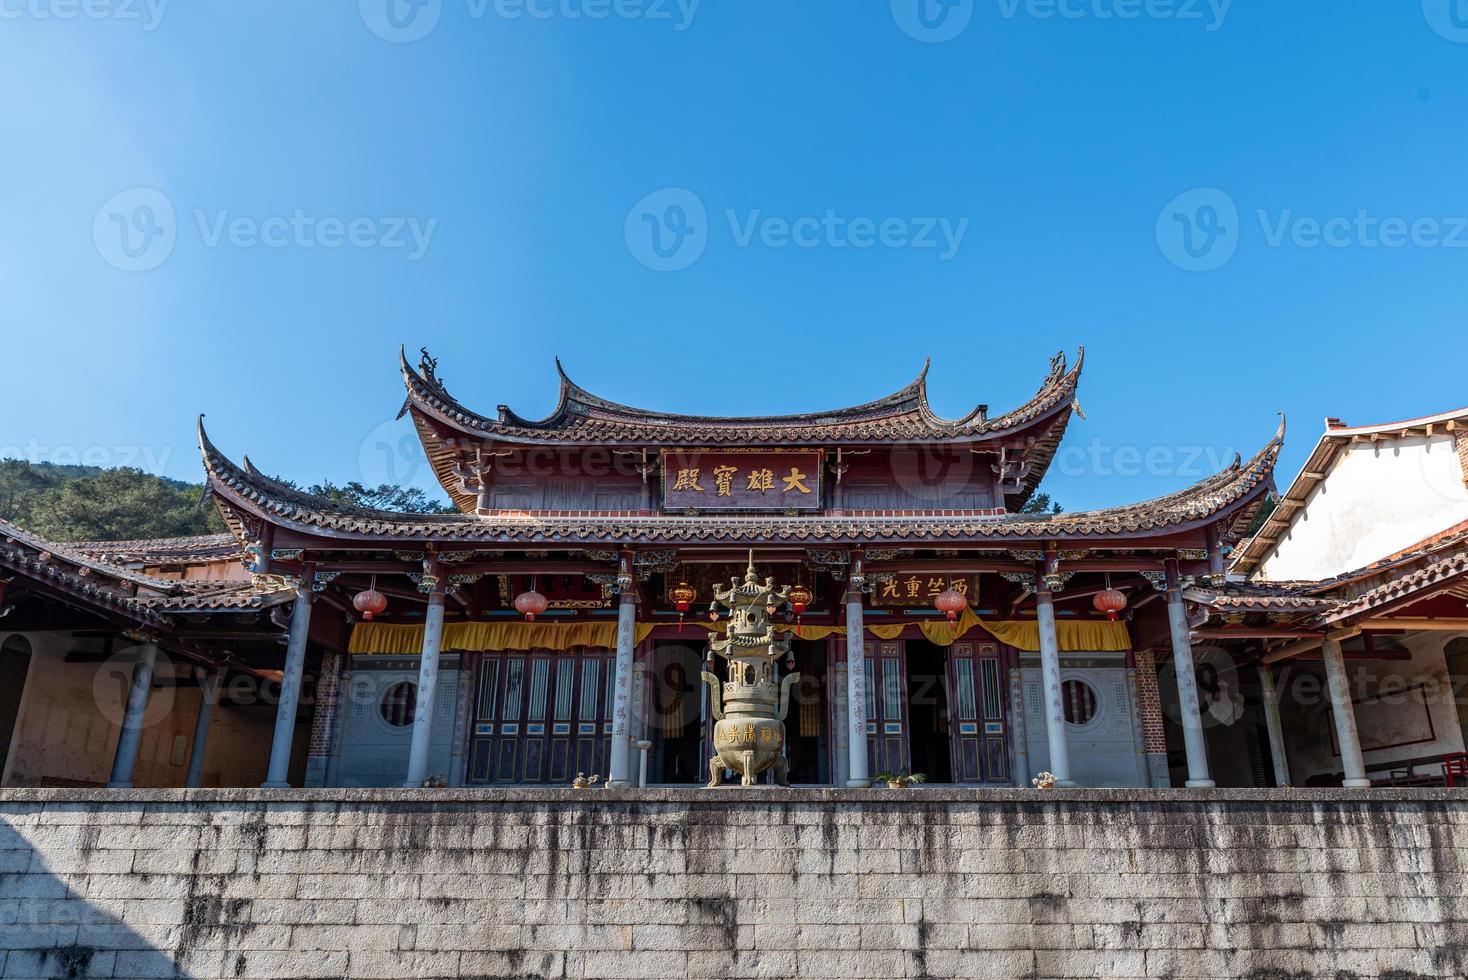 lokal struktur av kinesiska traditionella buddhistiska tempel foto